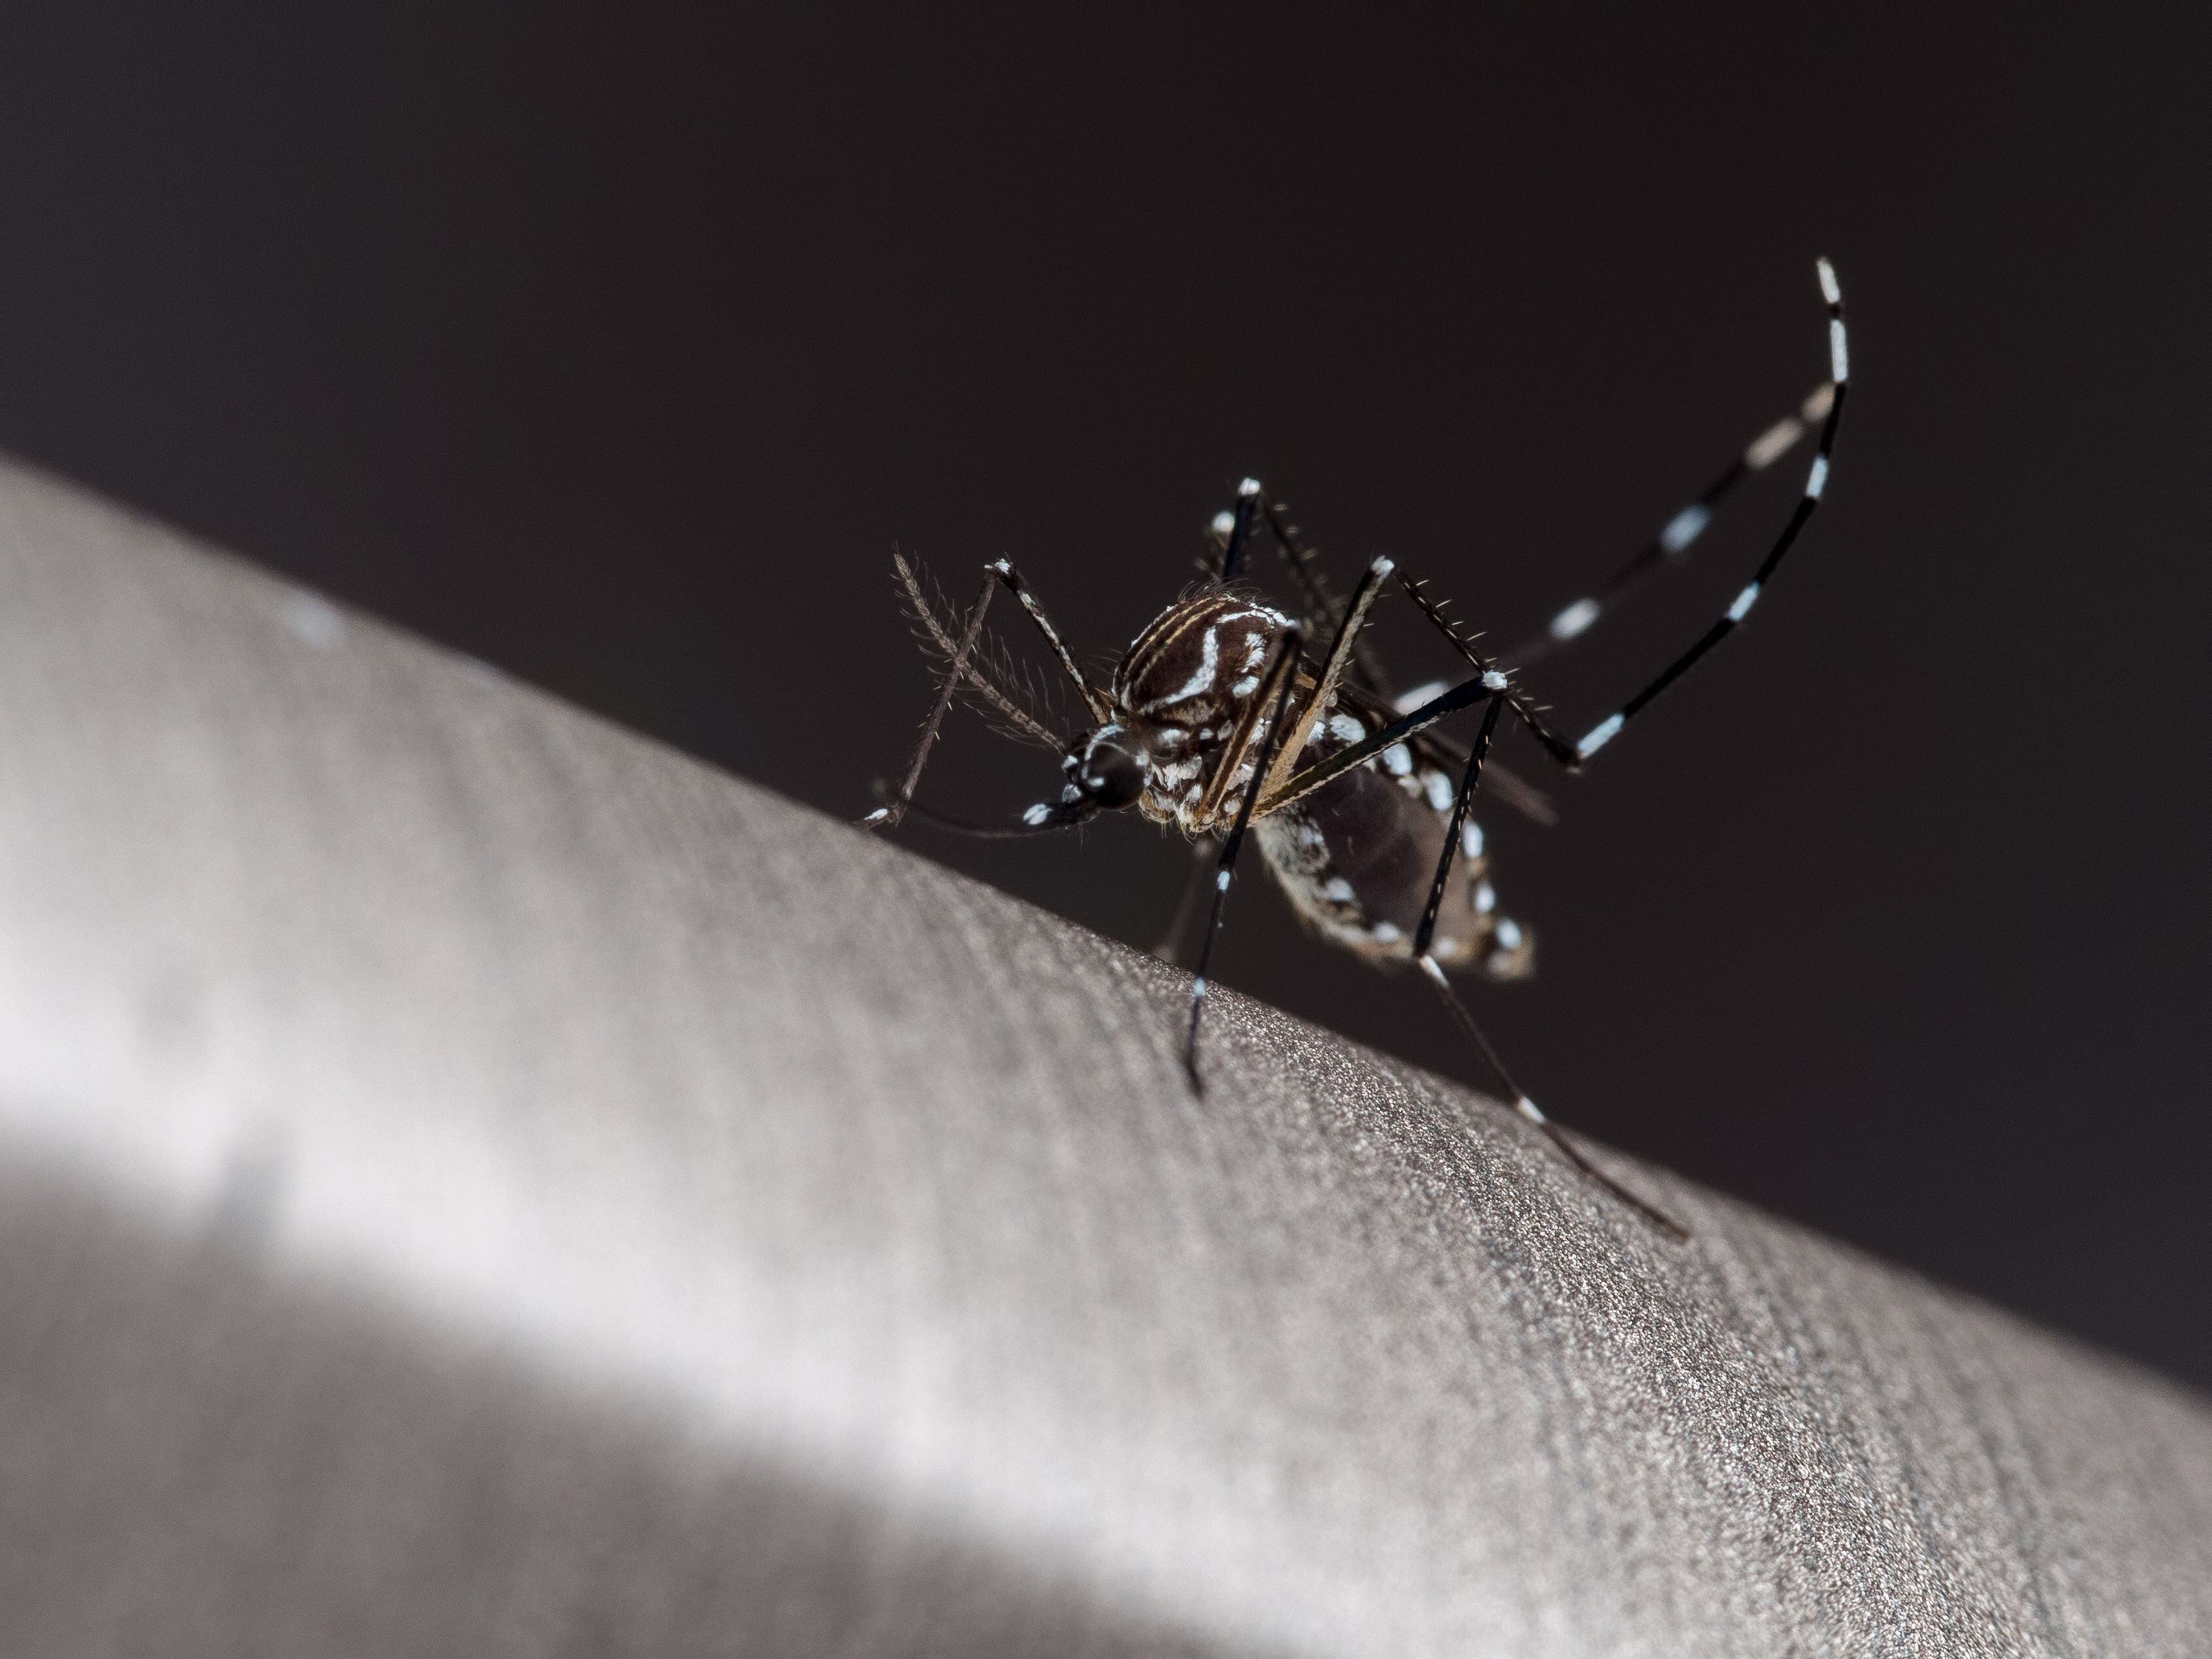 Flavivirus - Dengue - Mosquito